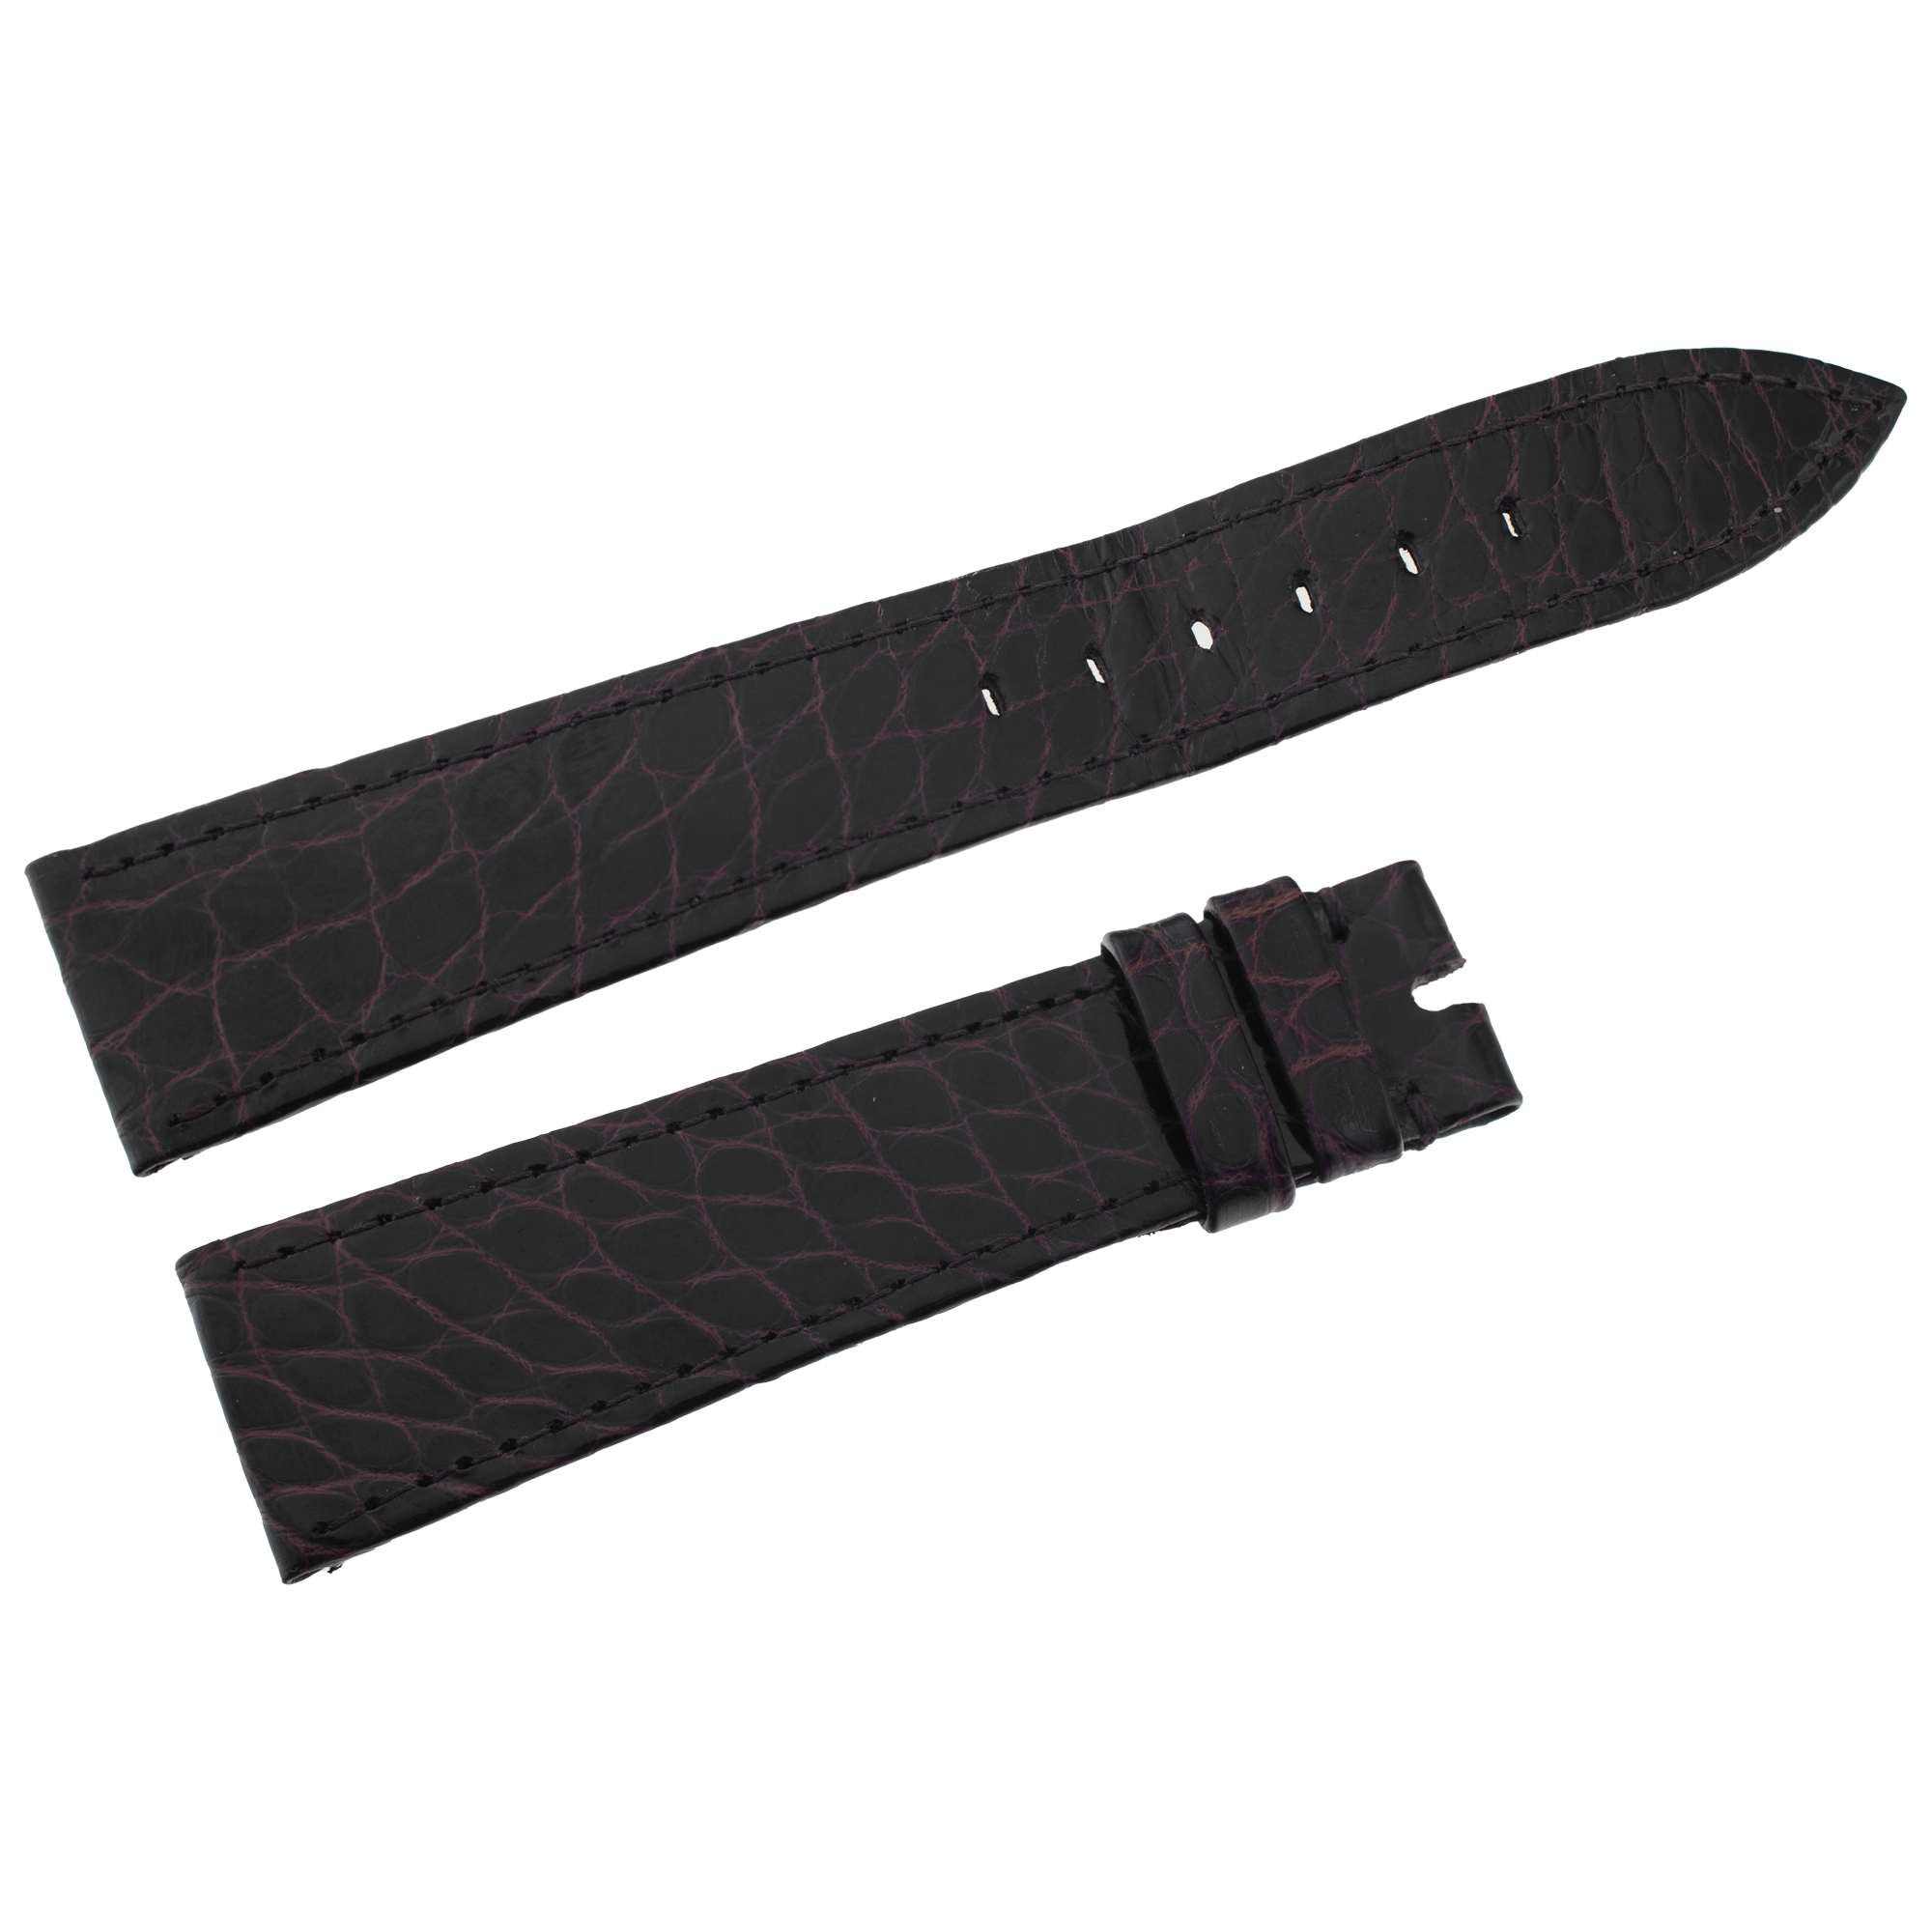 Rolex genuine Alligator brown shiny leather strap (20mm x 16mm) Shop Worn.